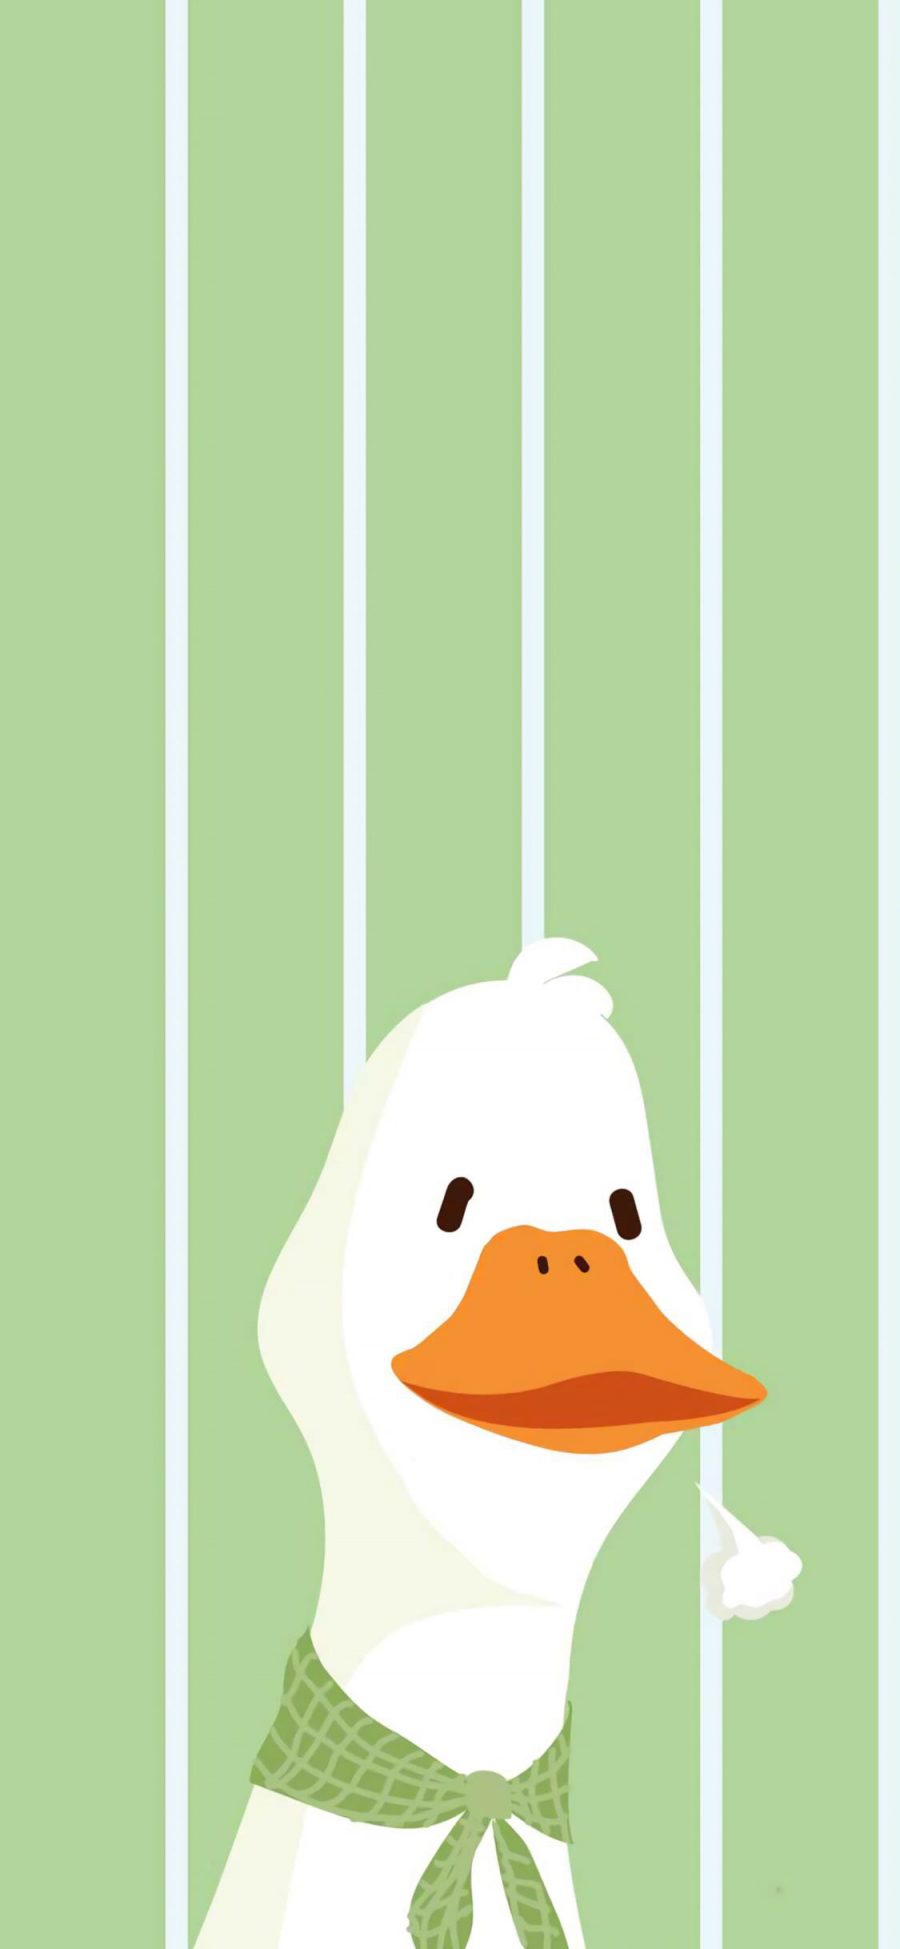 [2436×1125]鸭子 卡通 可爱 绿色 叹气 苹果手机动漫壁纸图片